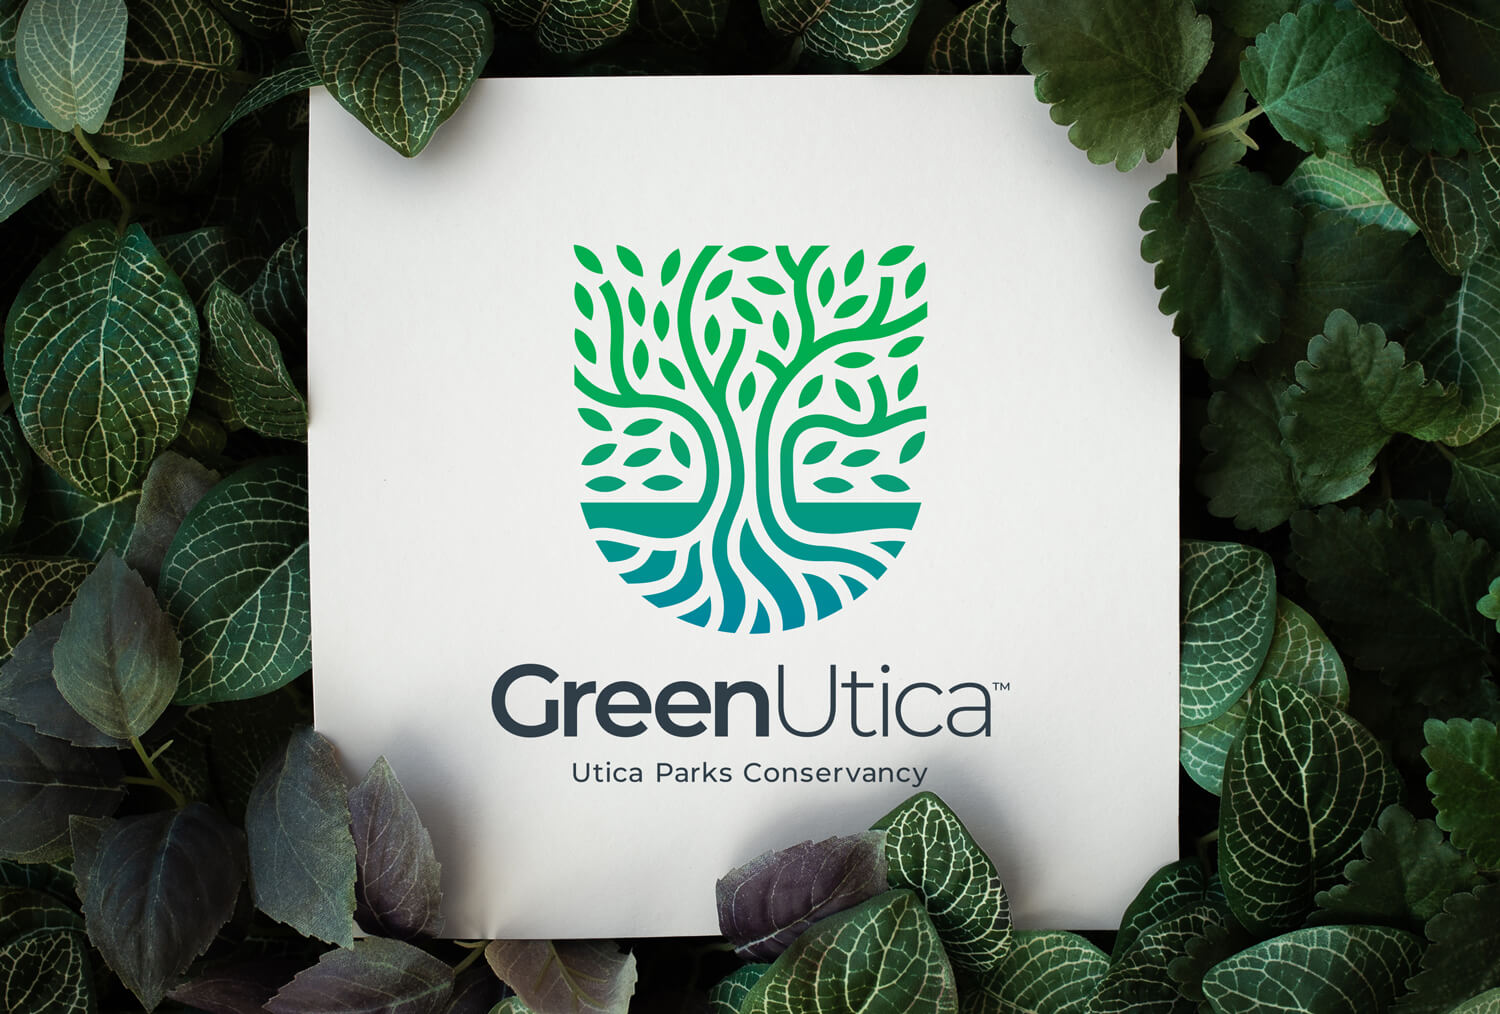 GreenUtica